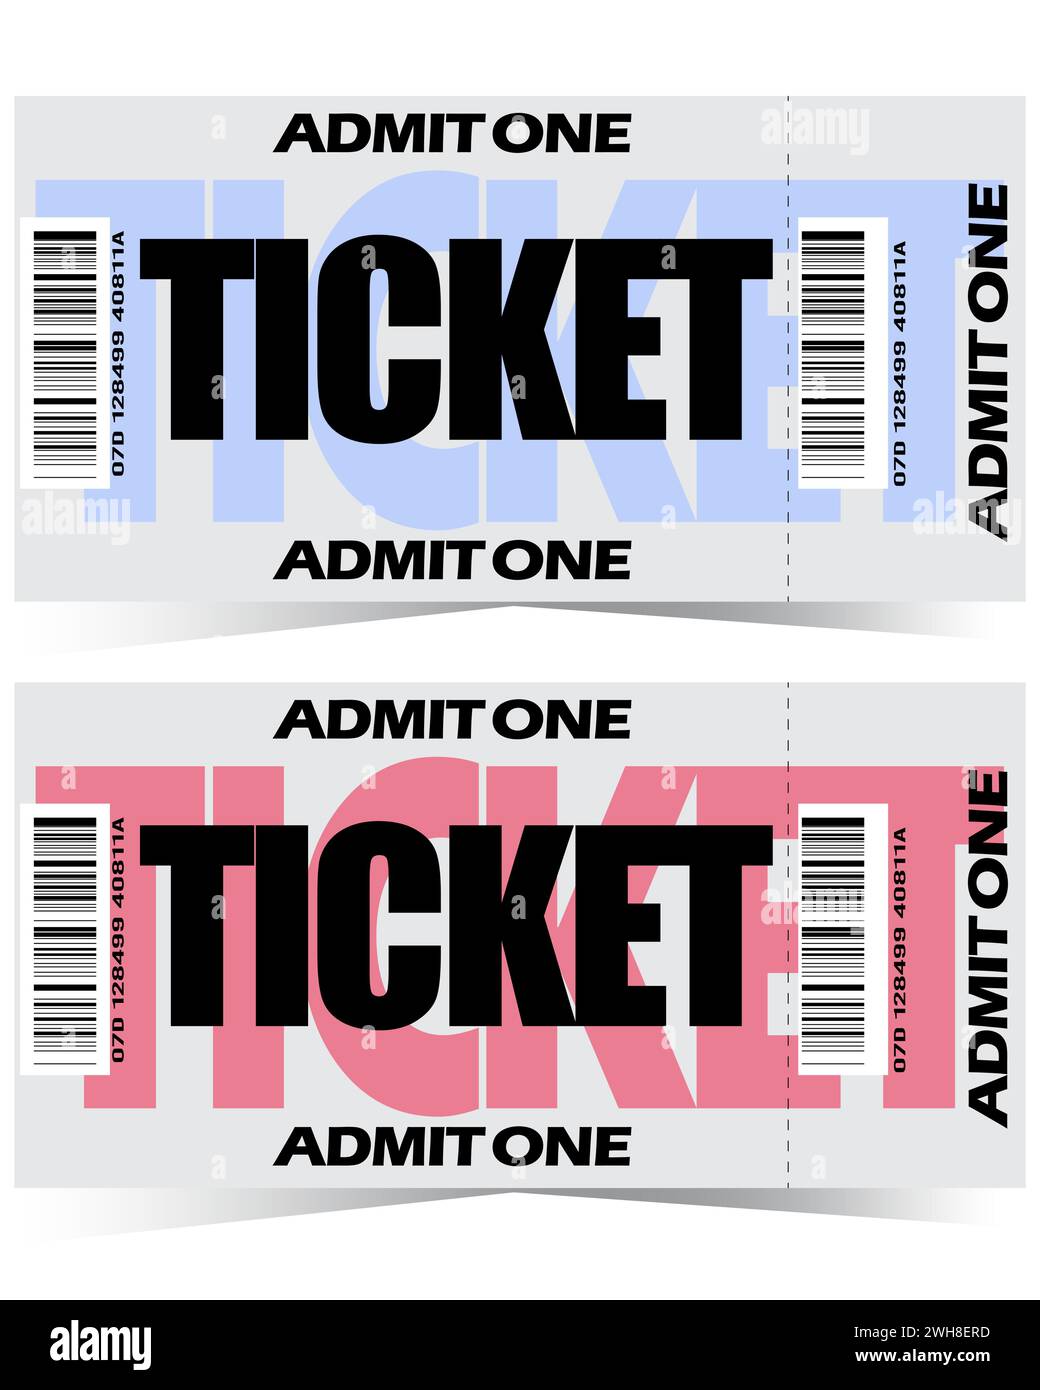 2 biglietti per eventi in stile retrò in blu e rosa, un biglietto d'ingresso Illustrazione Vettoriale